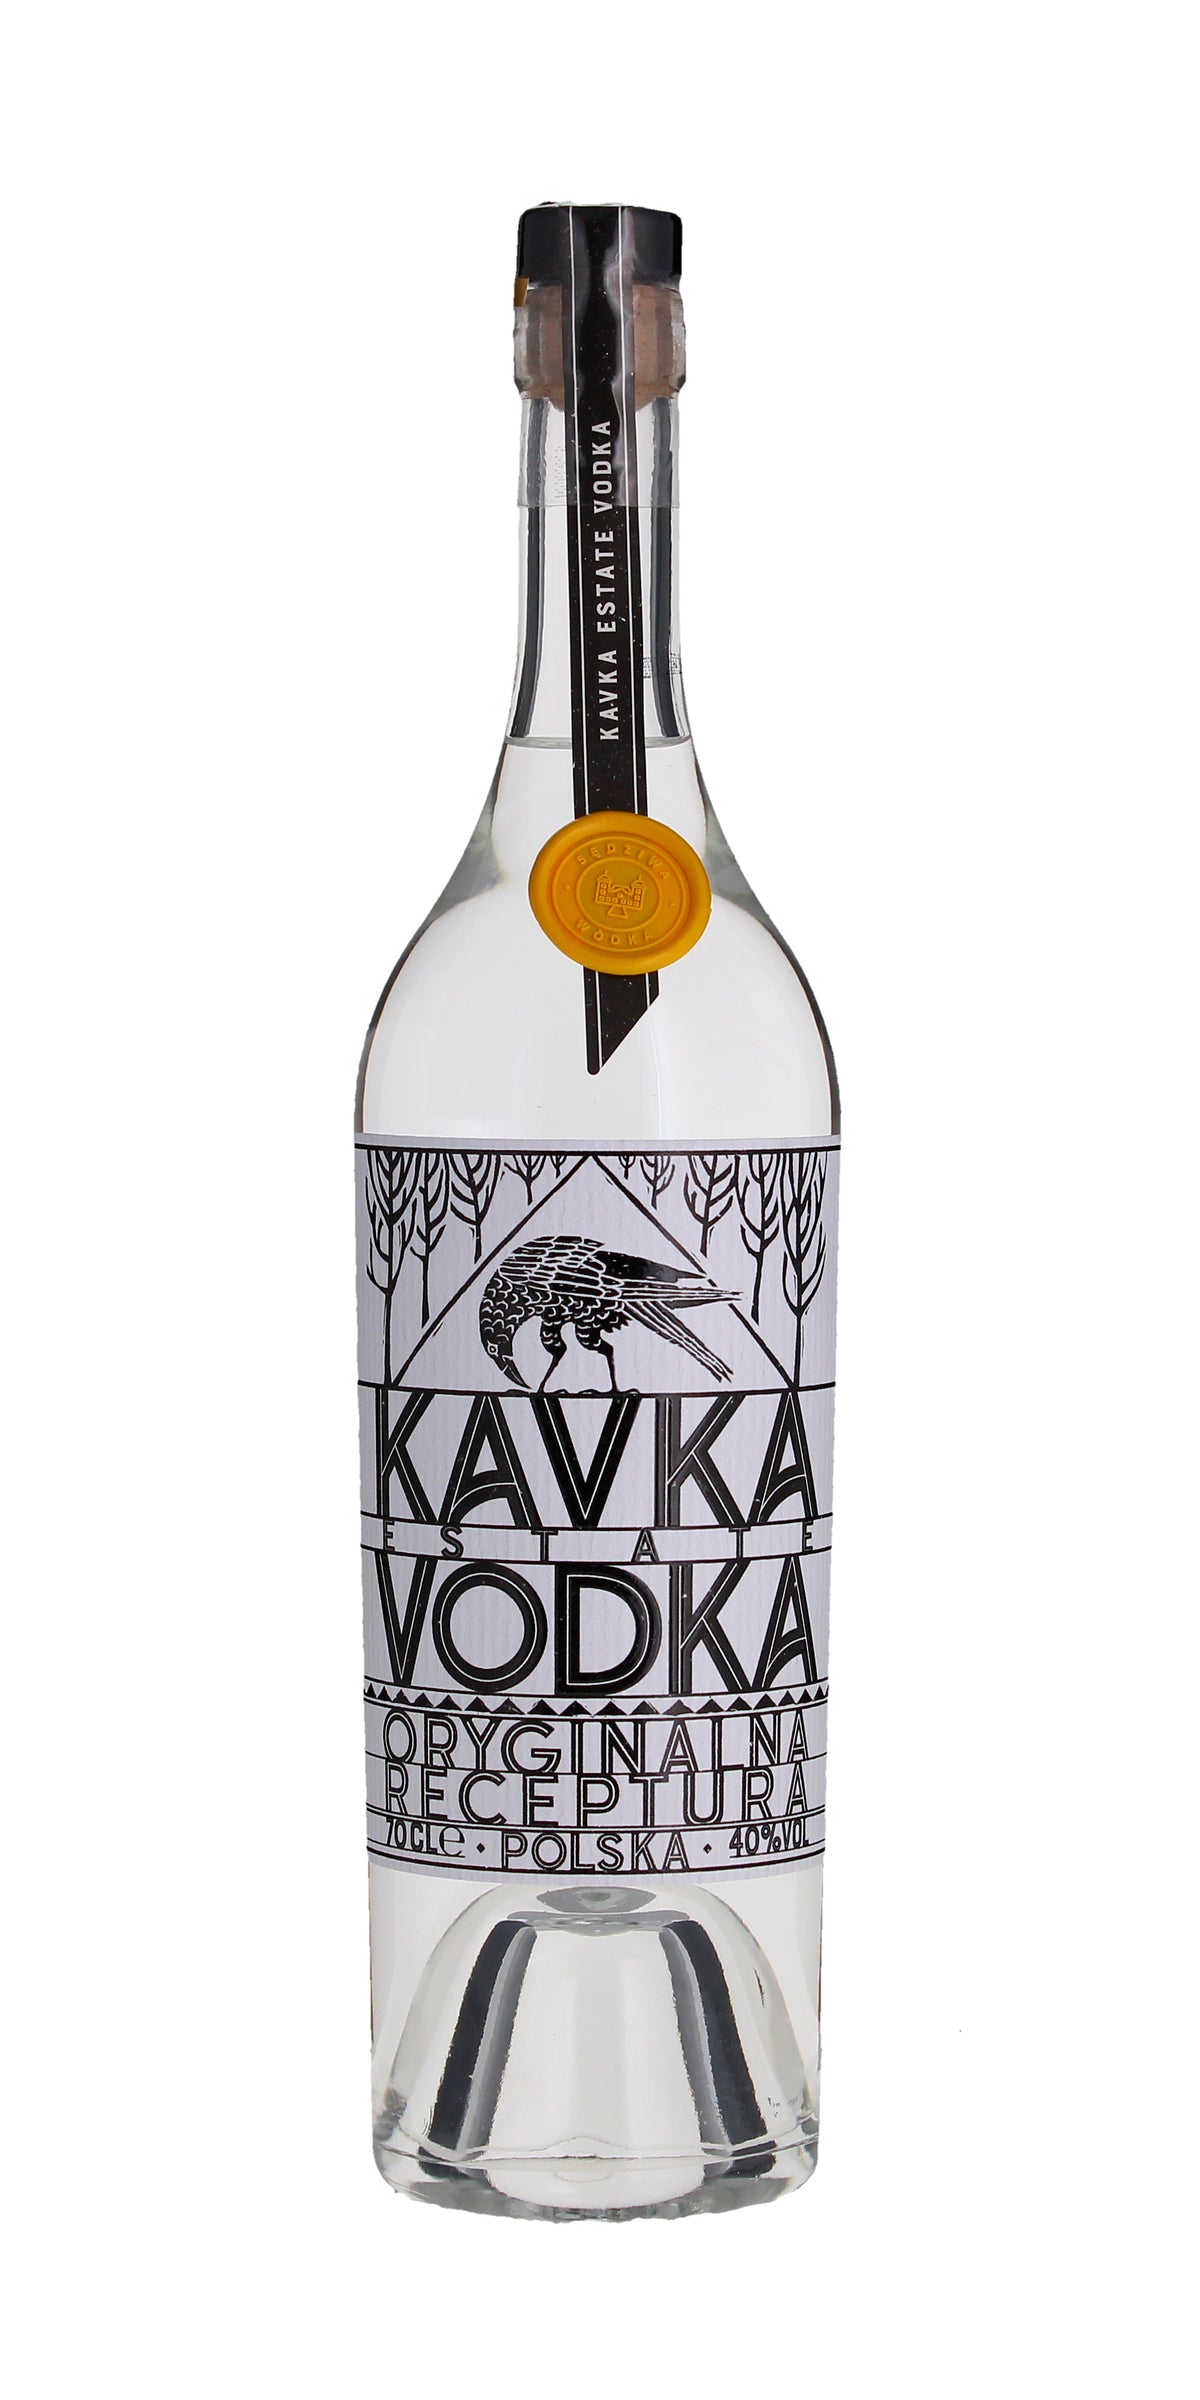 Kavka Vodka, Poland